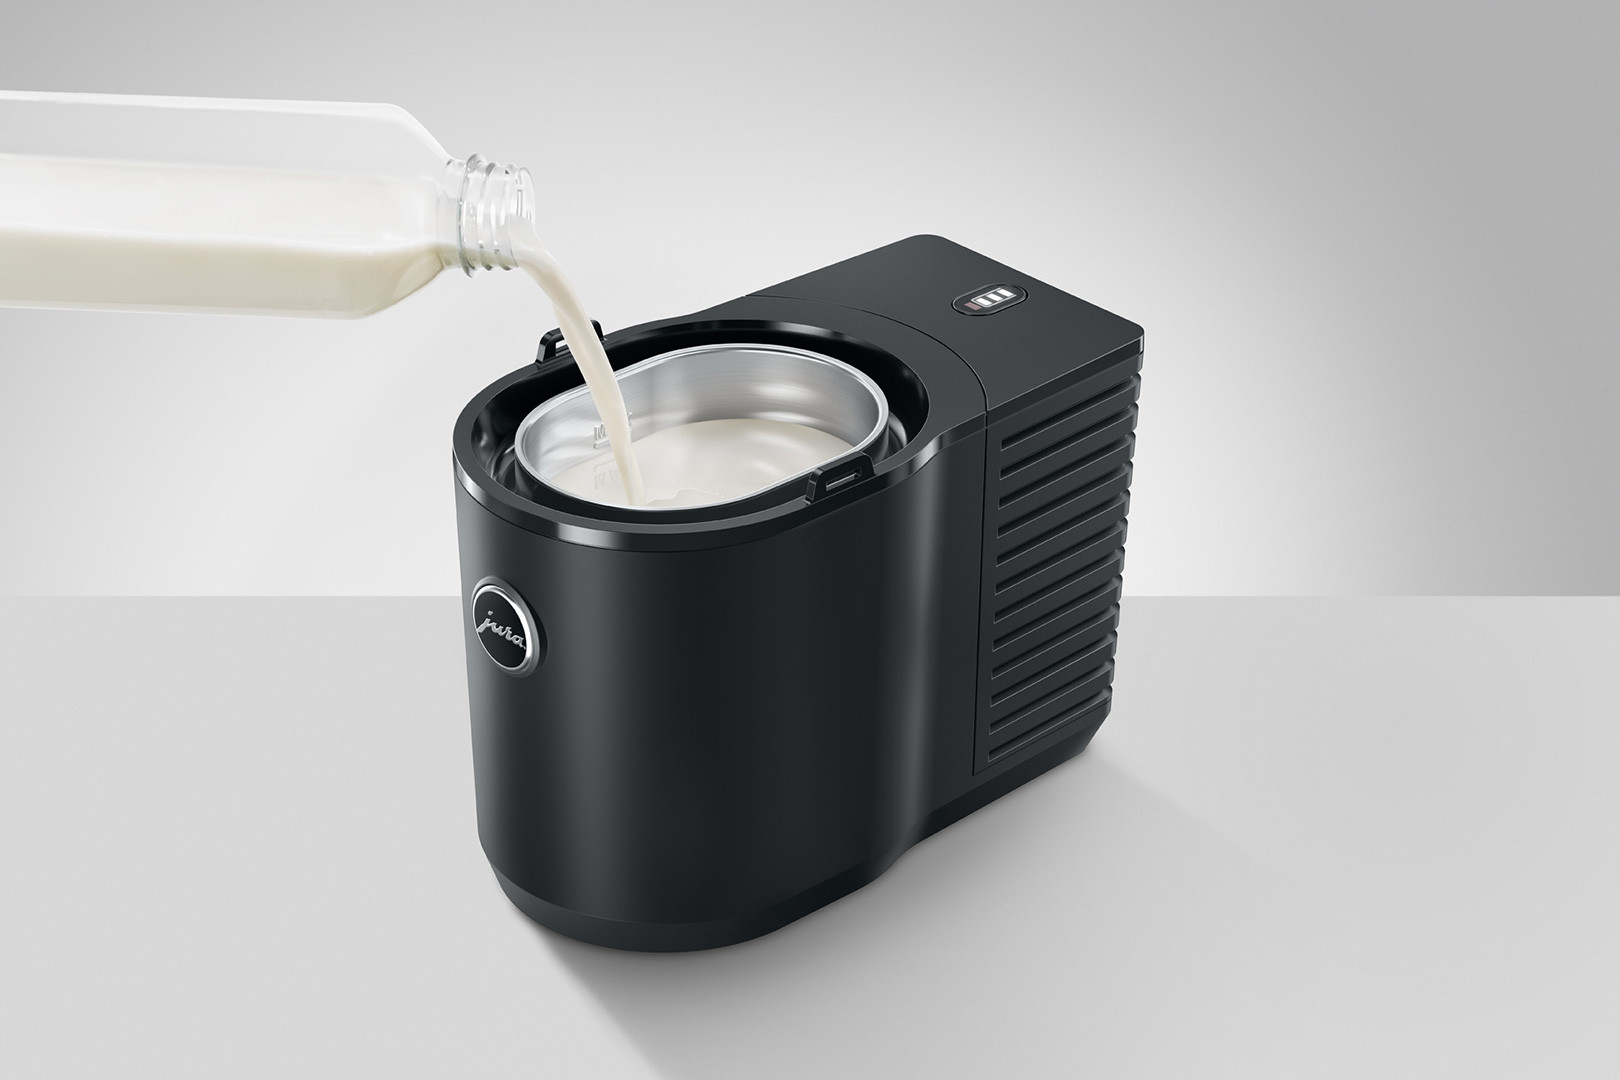 JURA Cool Control Milchkühler 1 Liter schwarz